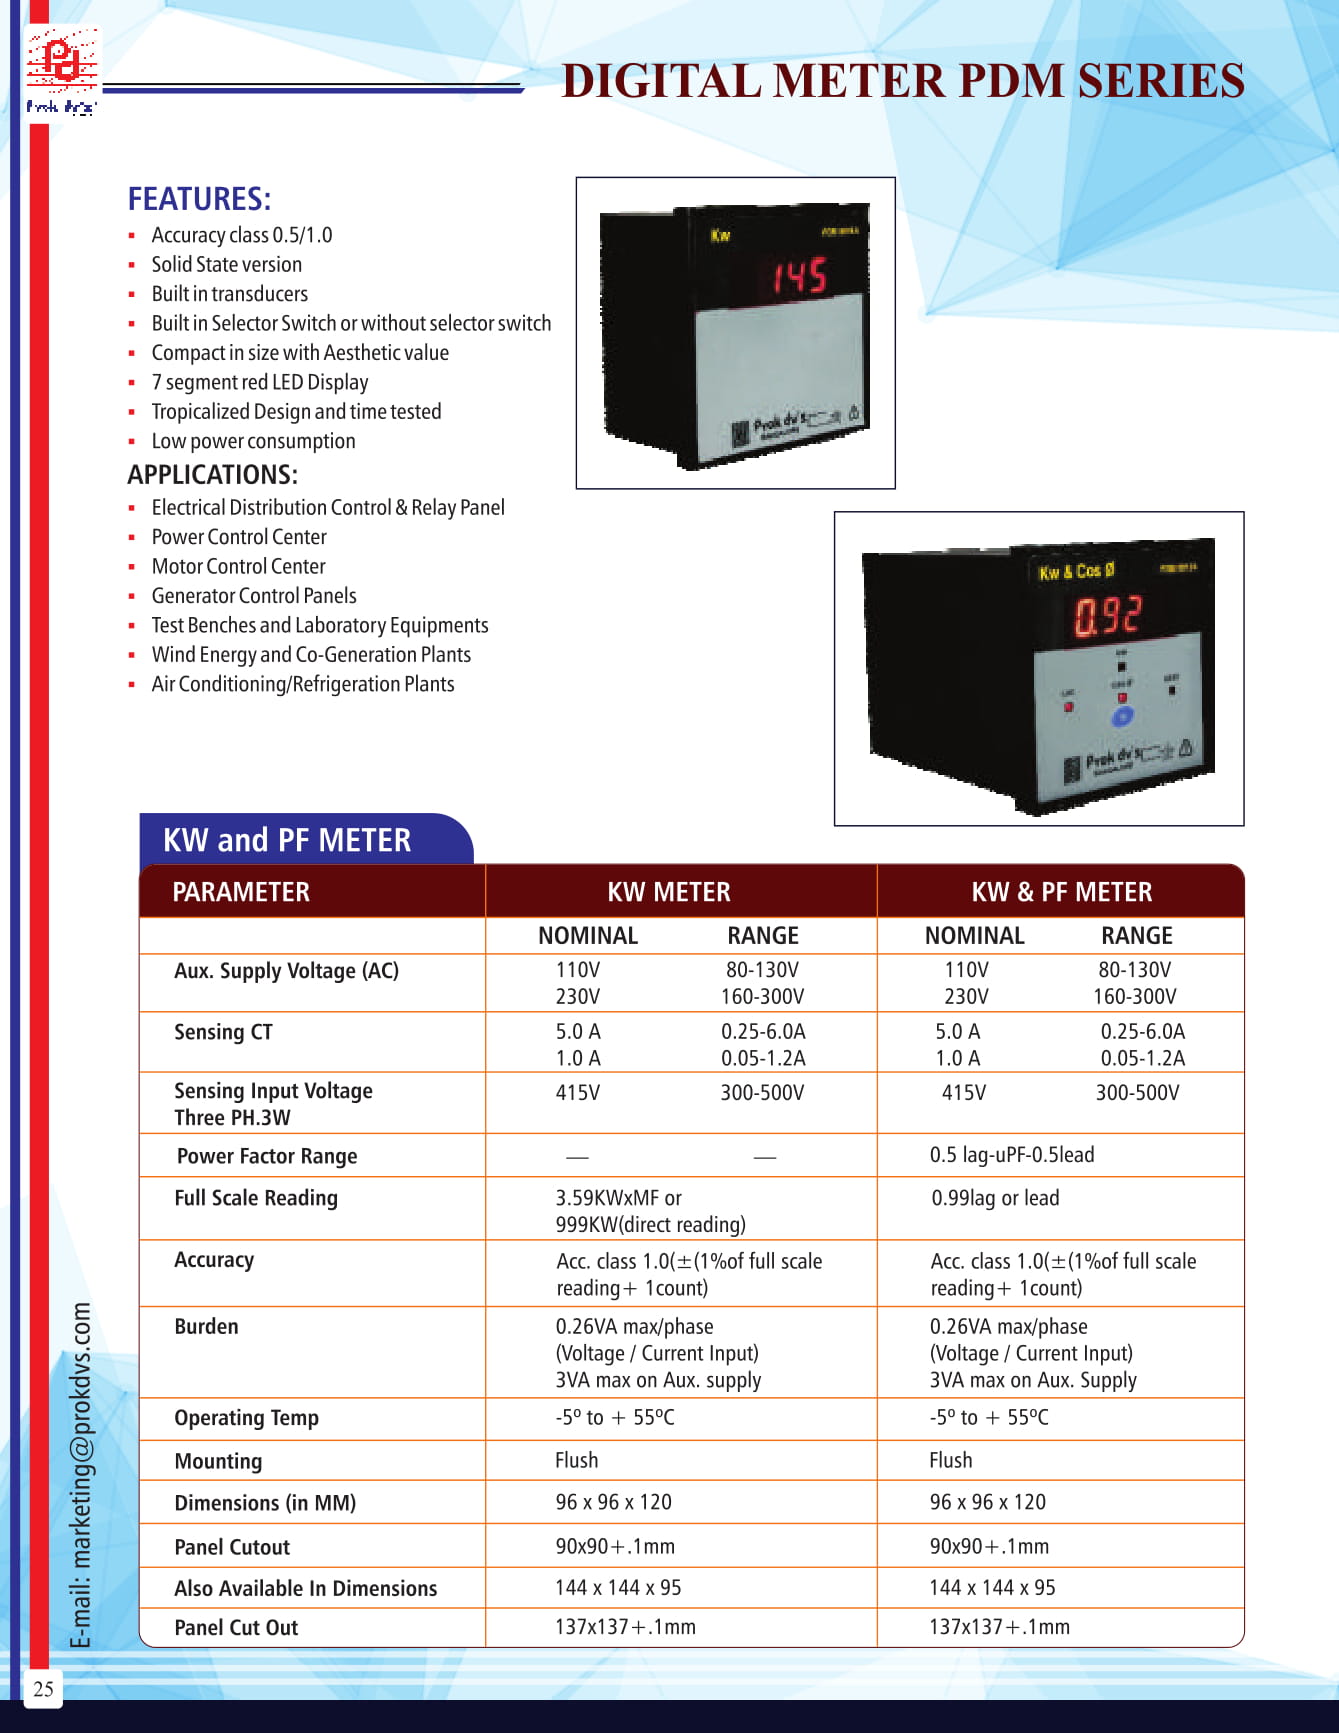 Digital Meter PDM Series